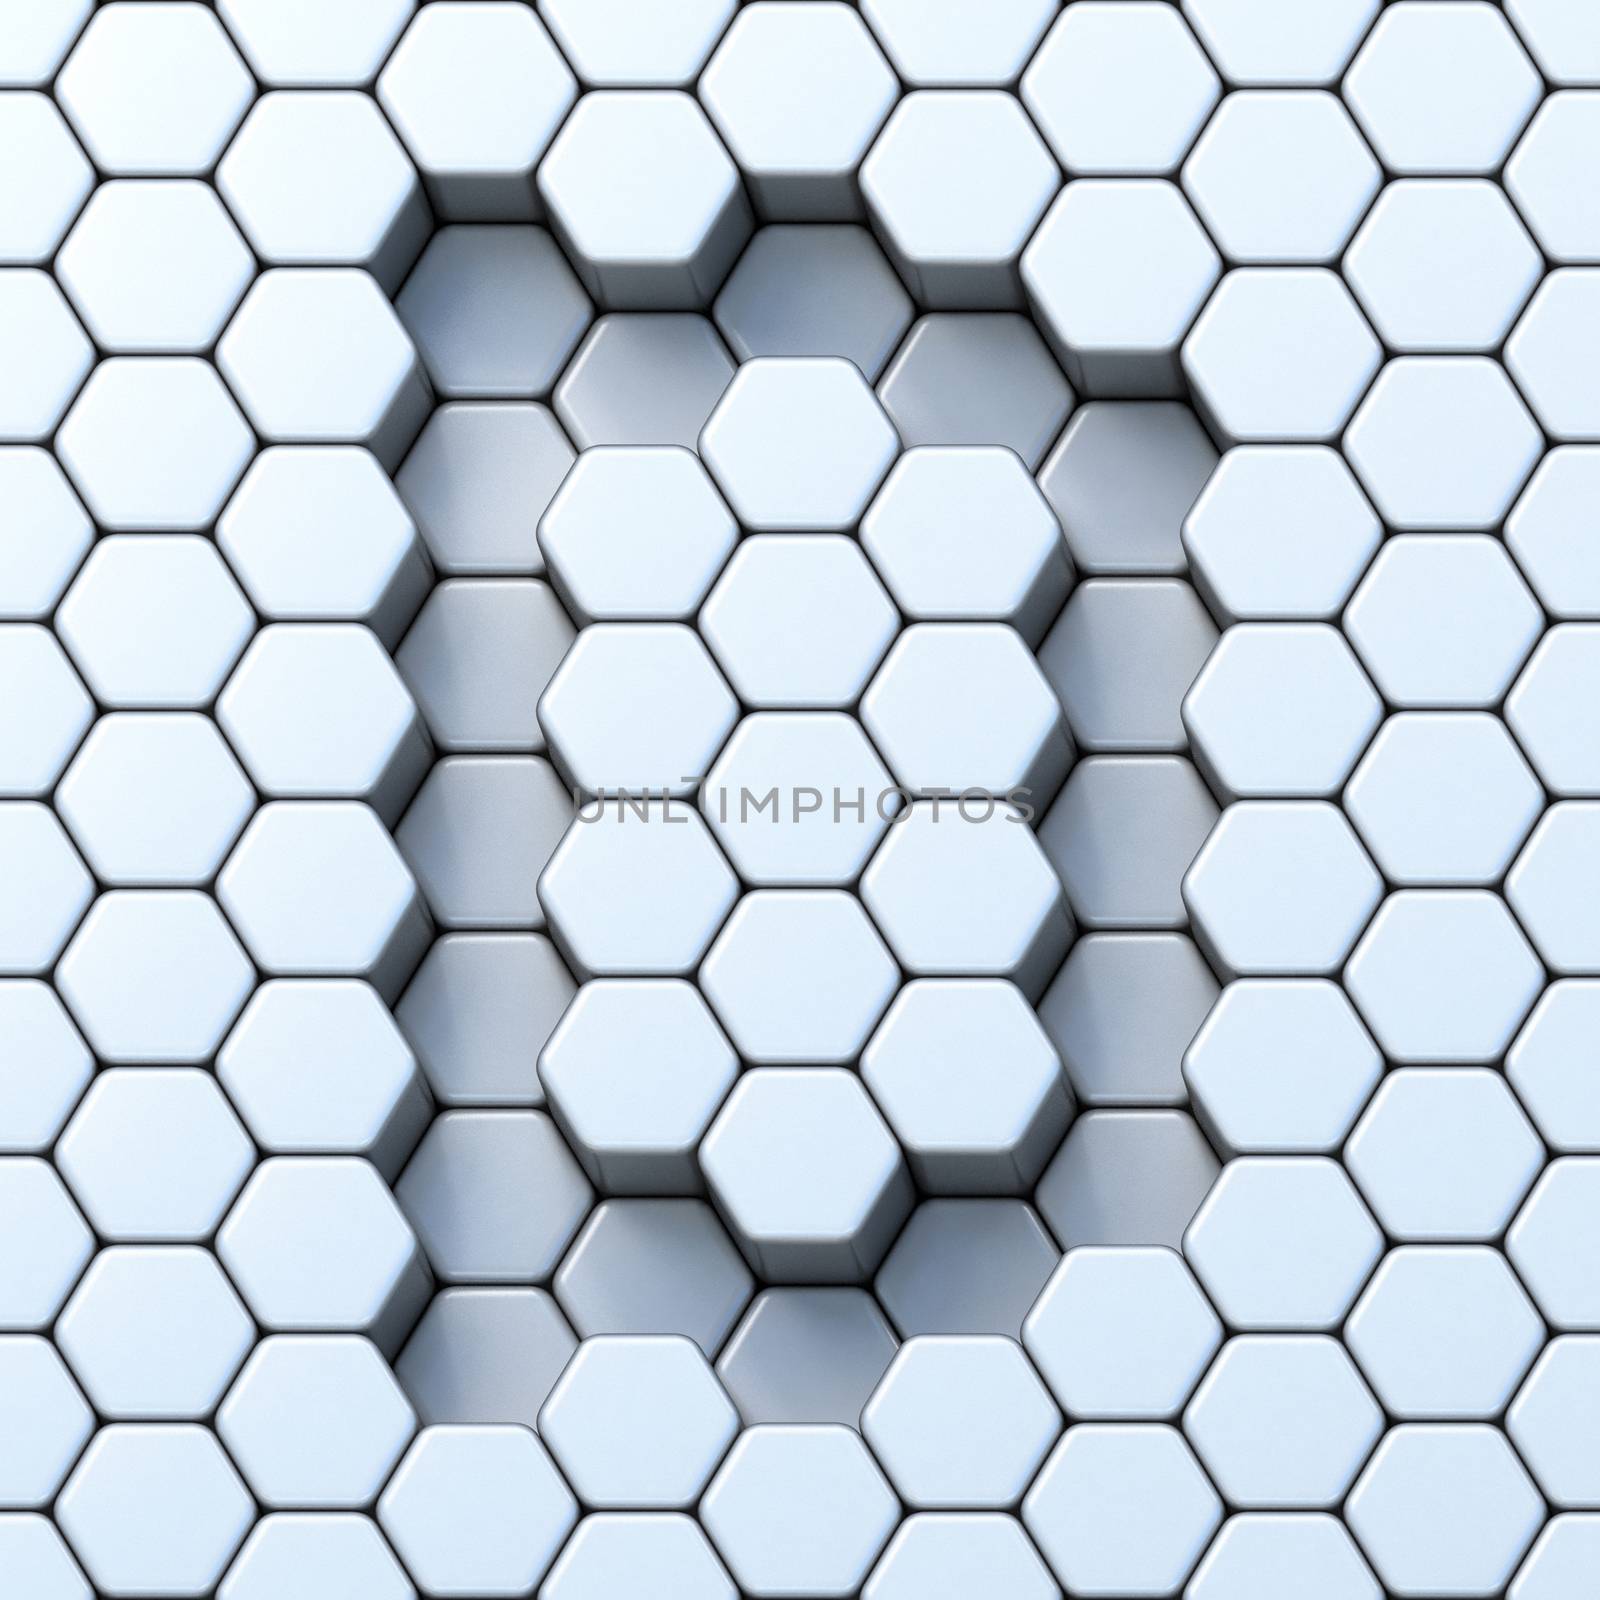 Hexagonal grid letter D 3D render illustration